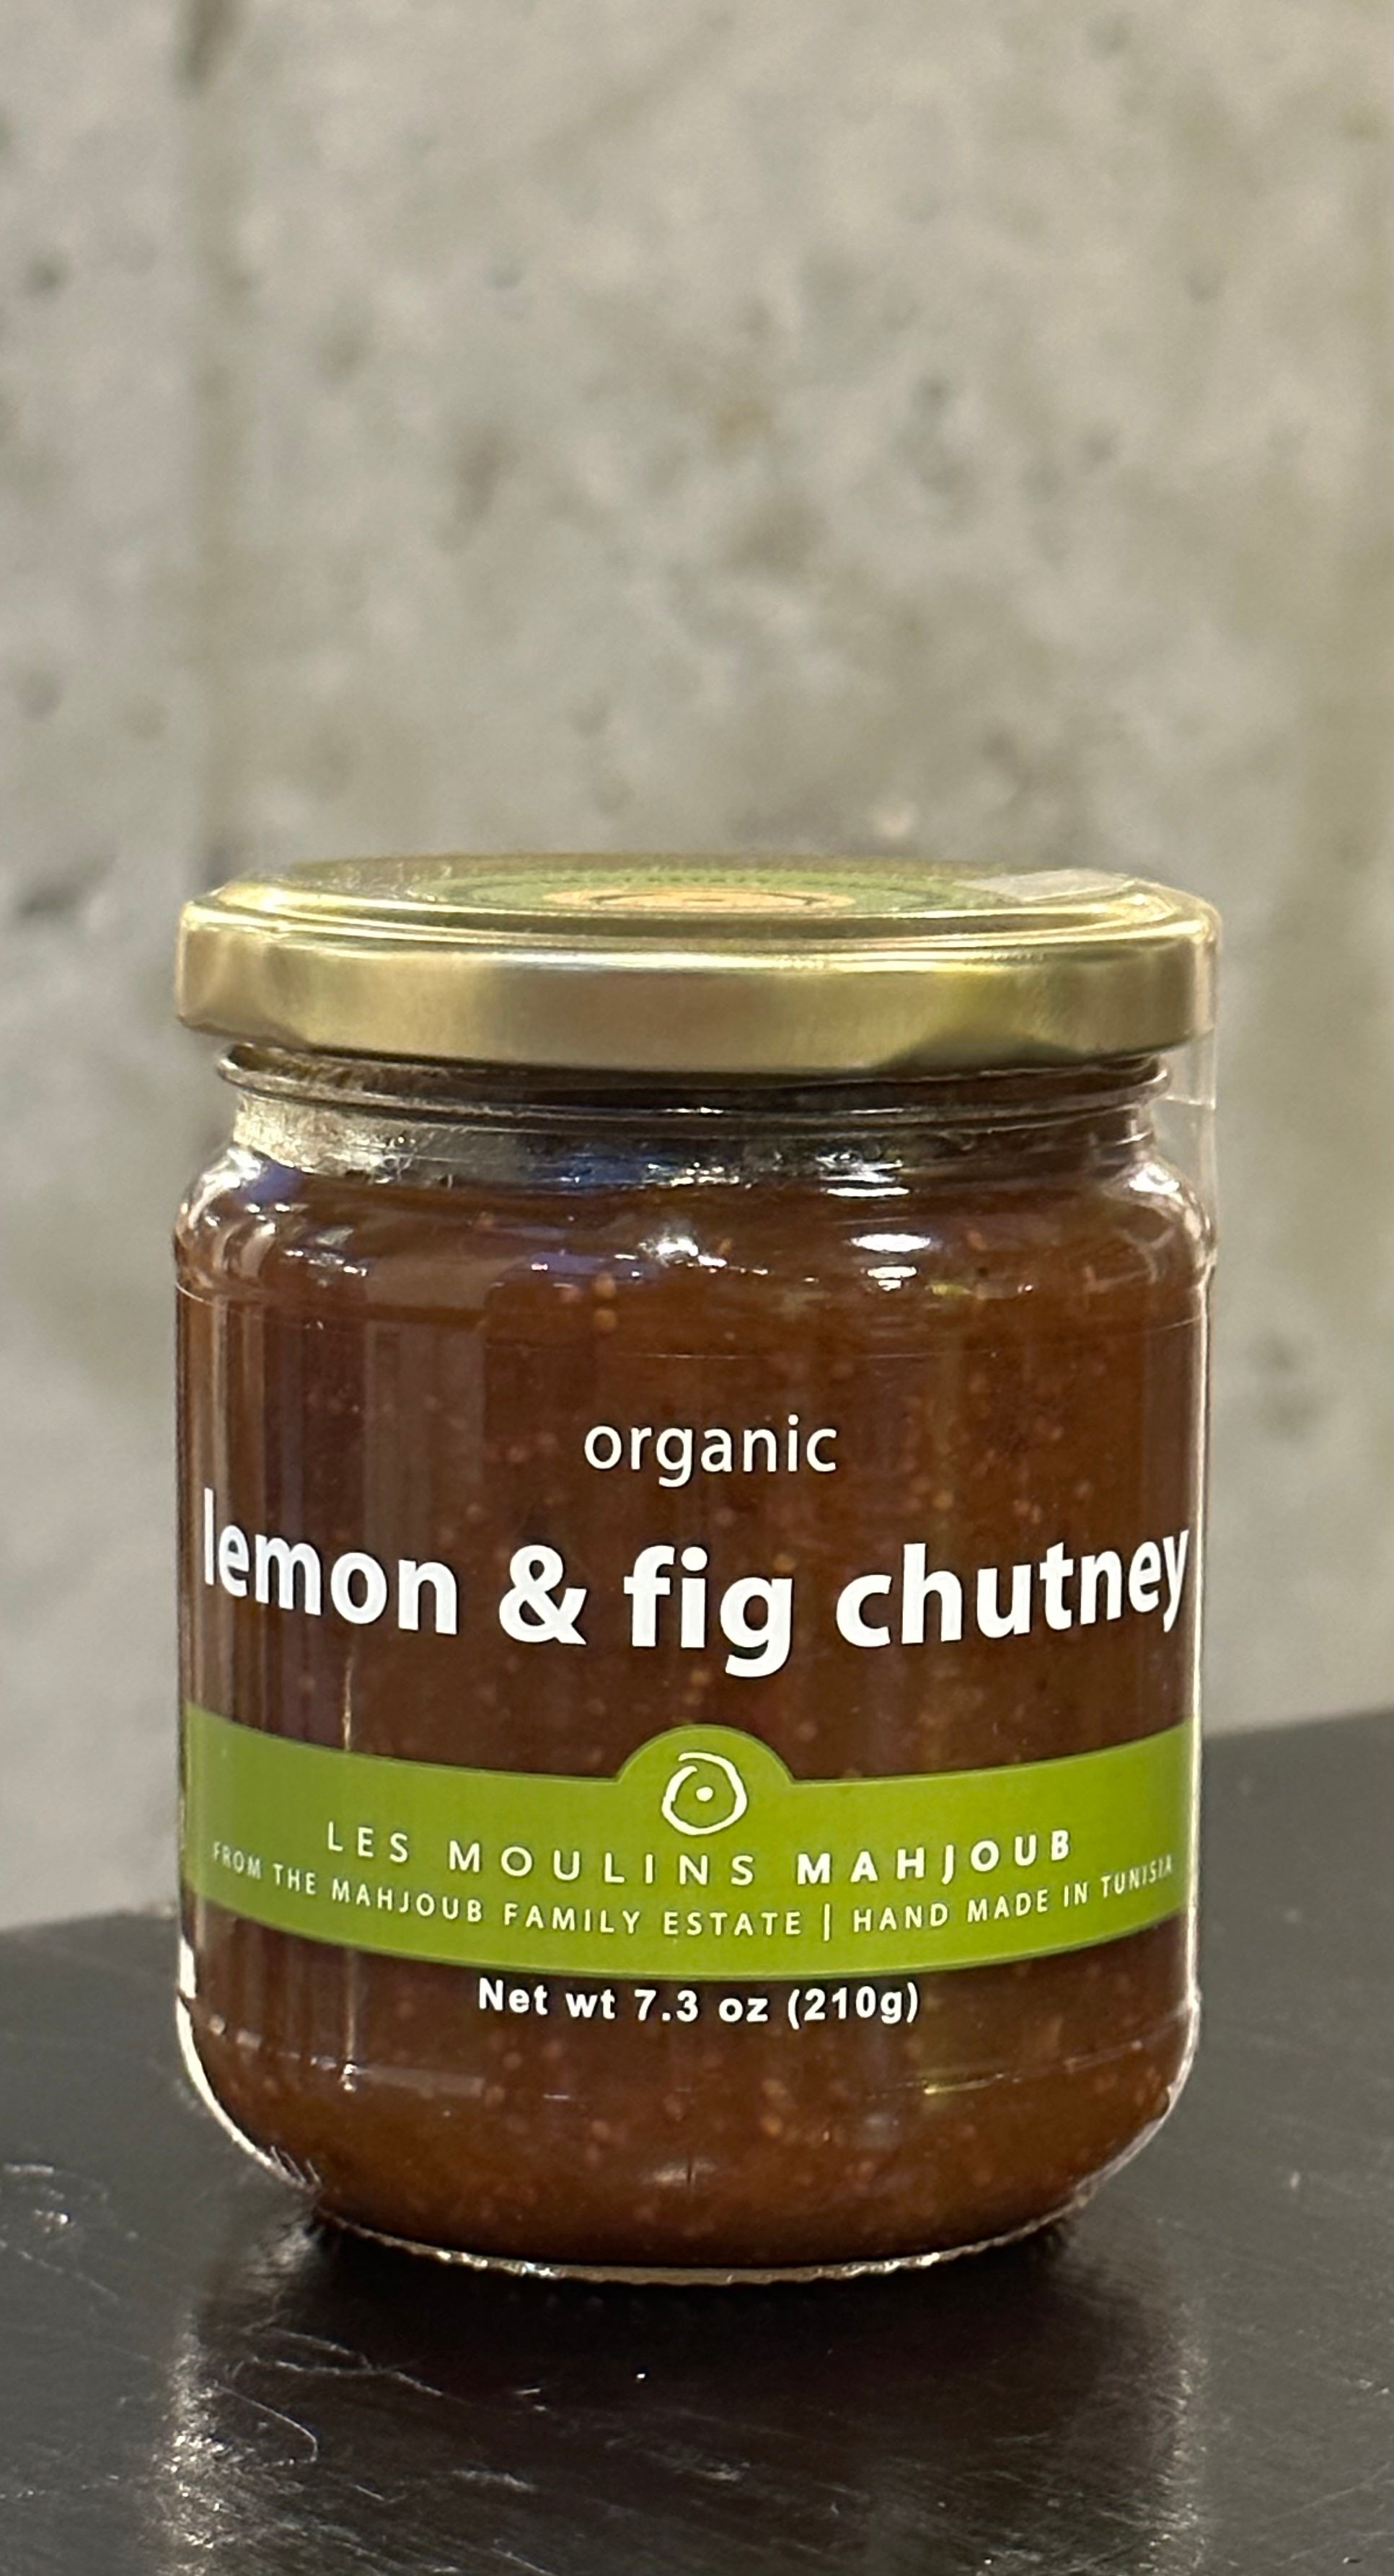 Les Moulins Mahjoub Organic Lemon & Fig Chutney